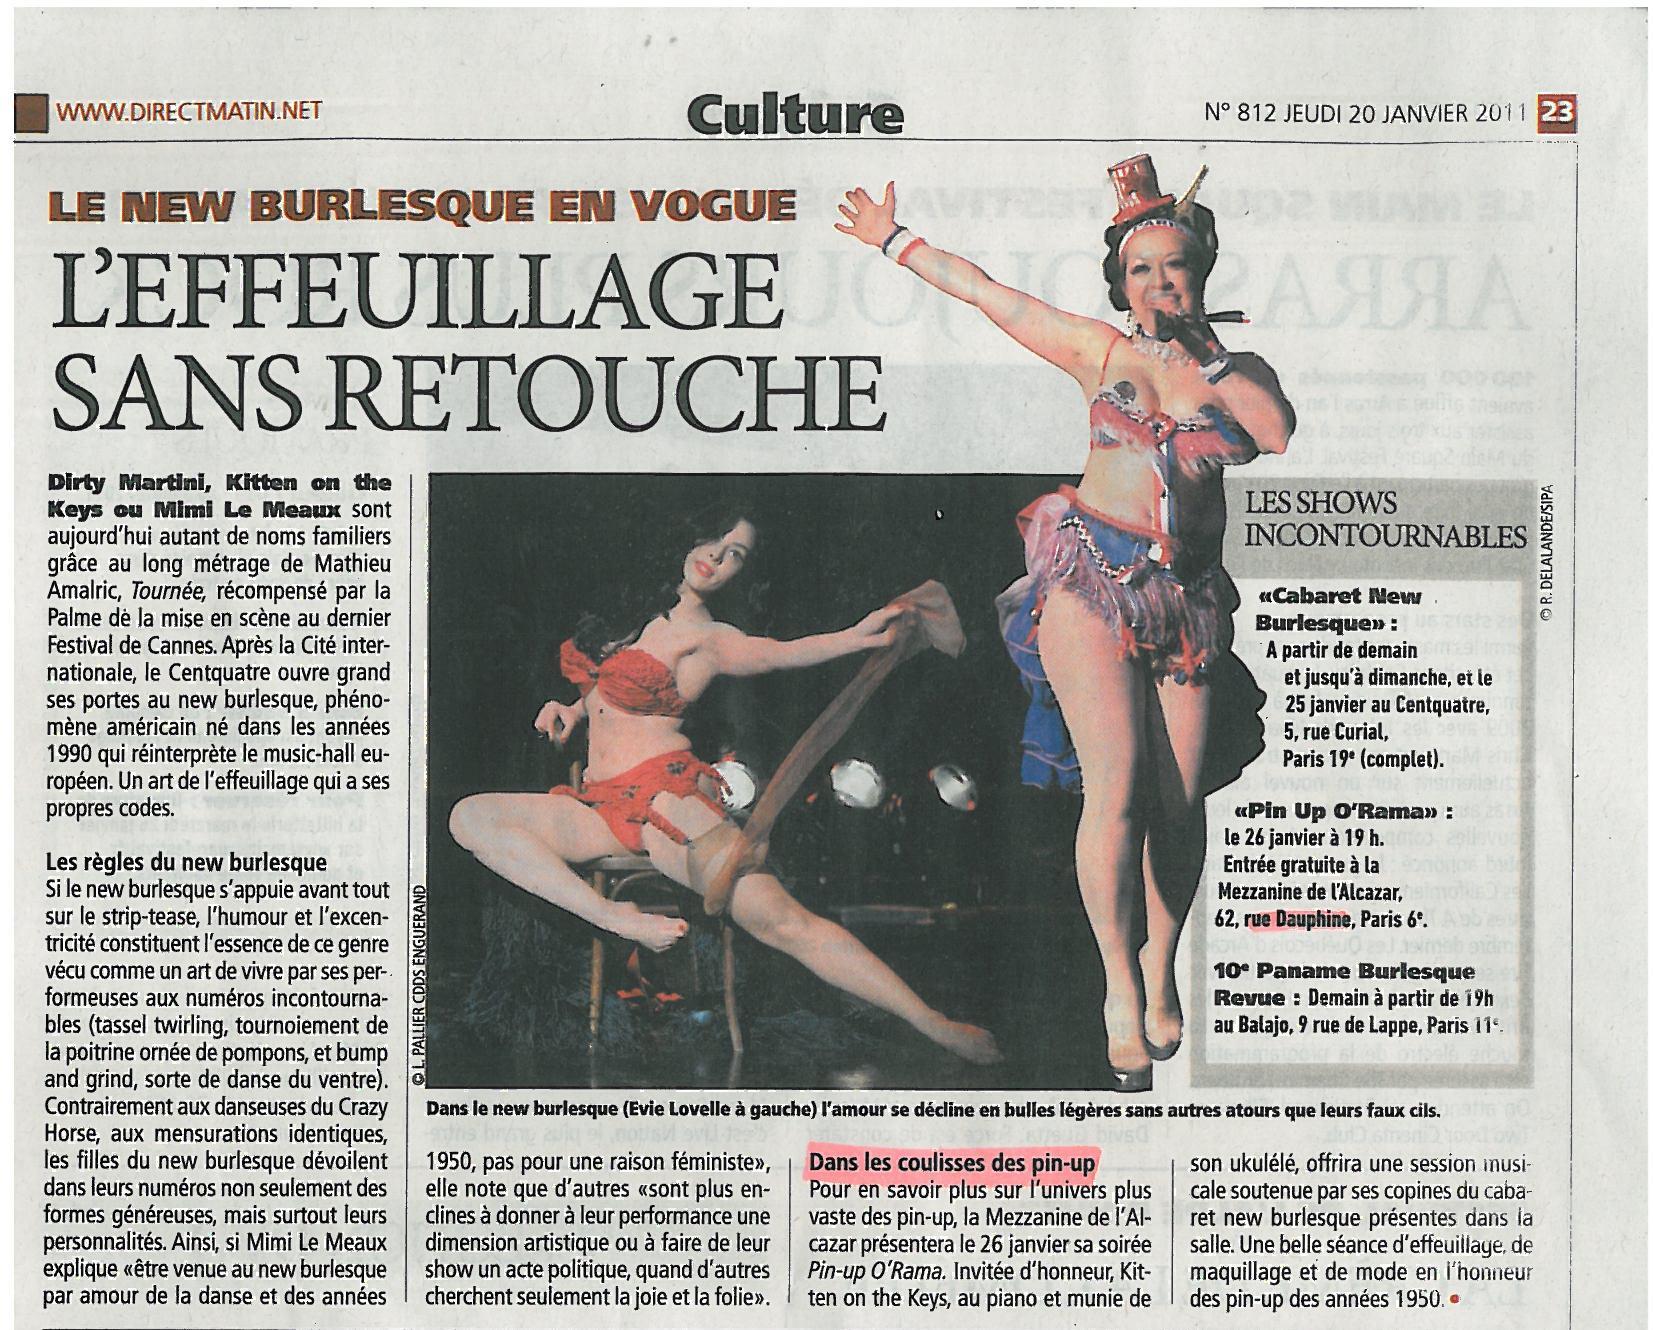 La presse en parle: Mercredi 26 janvier – Soirée New Burlesque à la Mezzanine de l’Alcazar